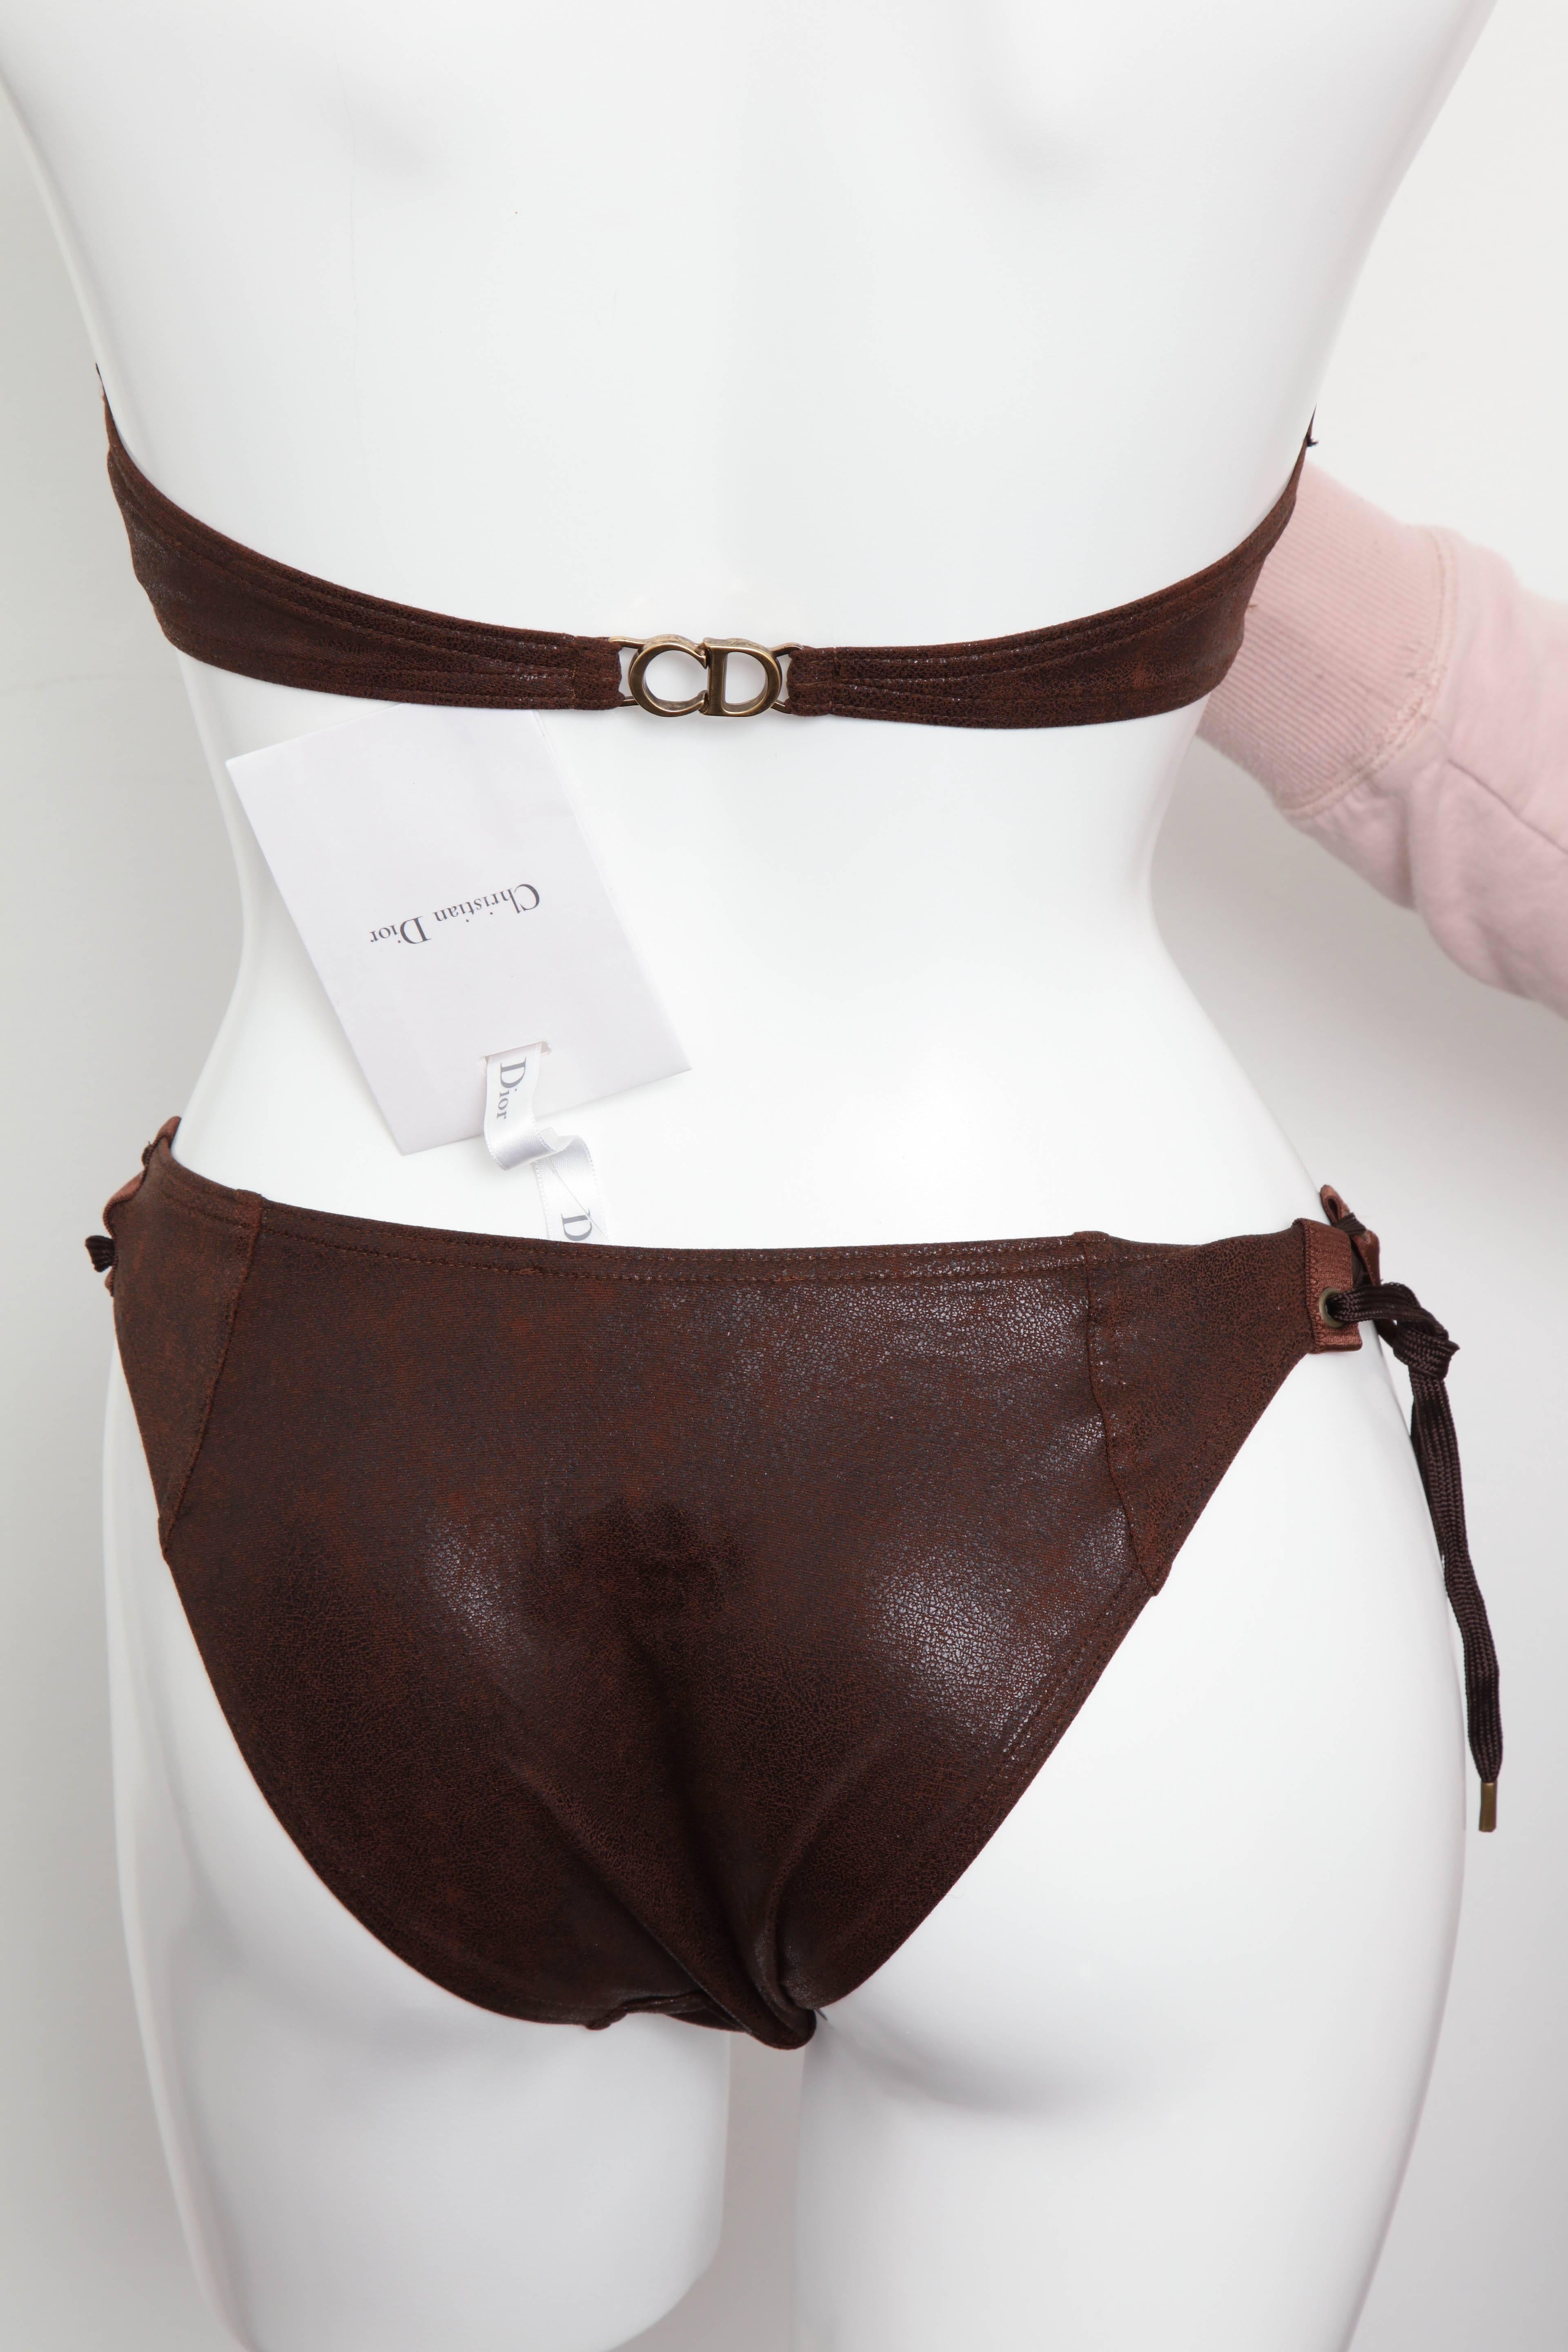 John Galliano for Christian Dior Brown Faux Leather Bikini 1